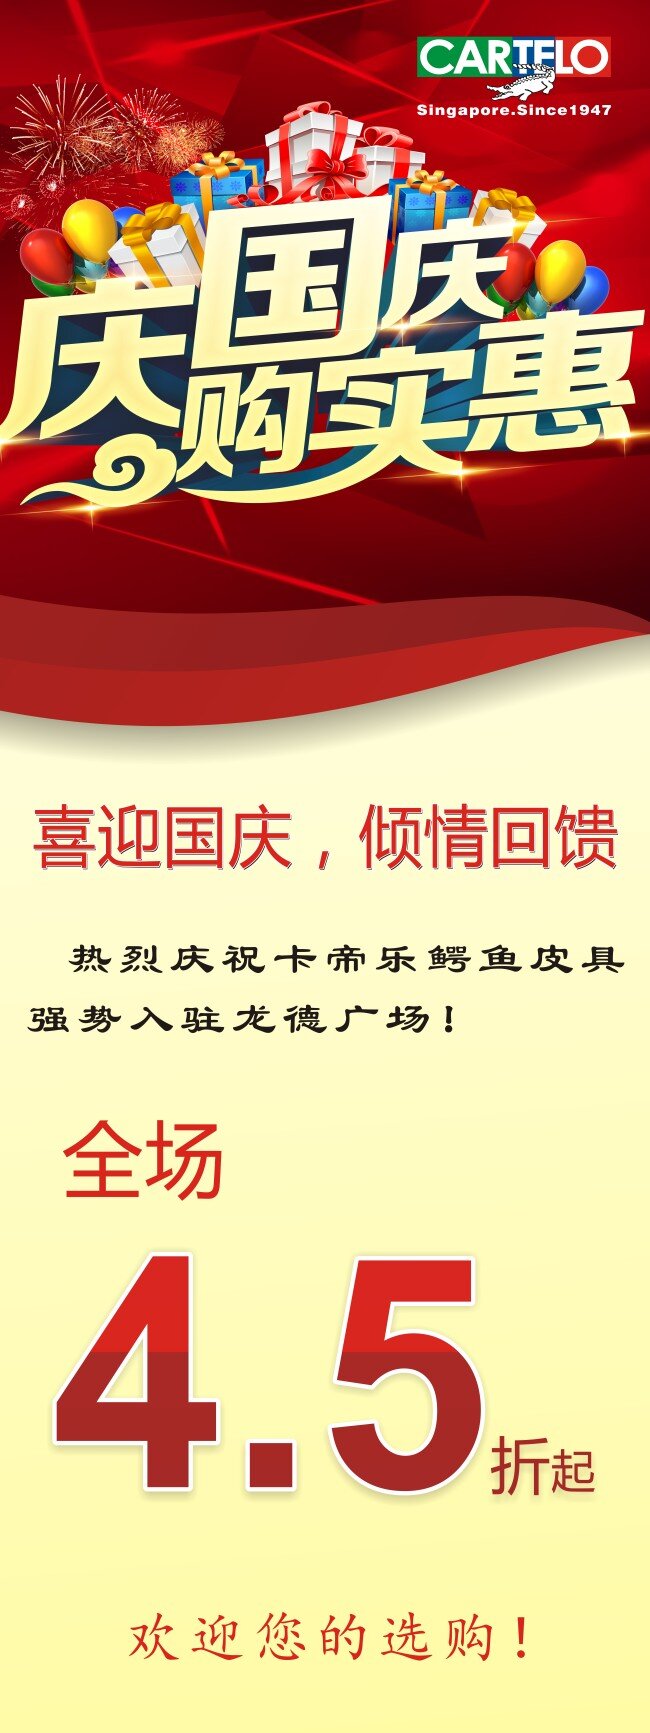 国庆 促销 折扣 海报 宣传 语 黄 红 背景 更 衬托 出 节日 气氛 白色